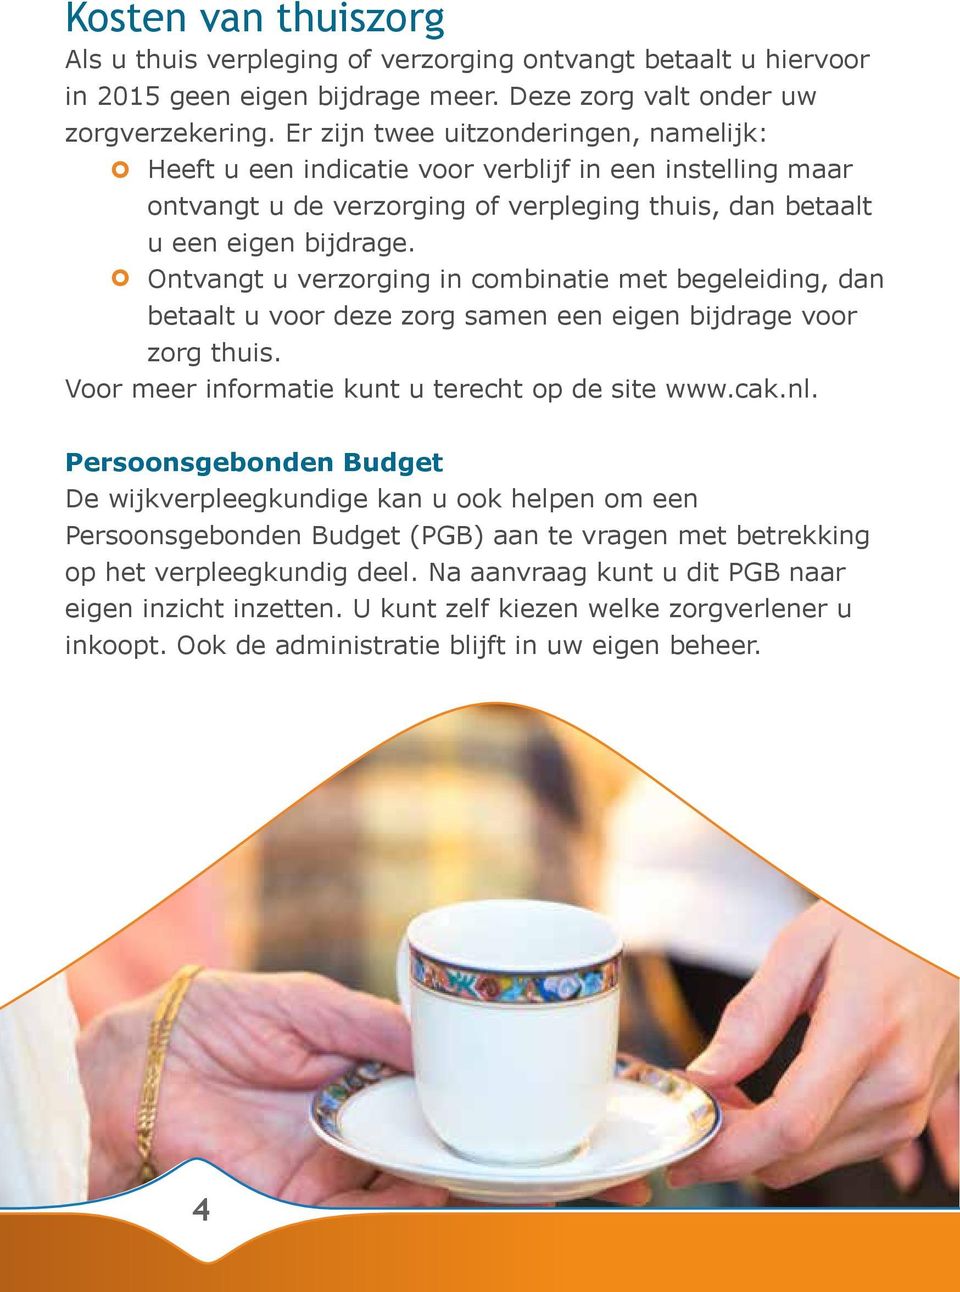 Ontvangt u verzorging in combinatie met begeleiding, dan betaalt u voor deze zorg samen een eigen bijdrage voor zorg thuis. Voor meer informatie kunt u terecht op de site www.cak.nl.